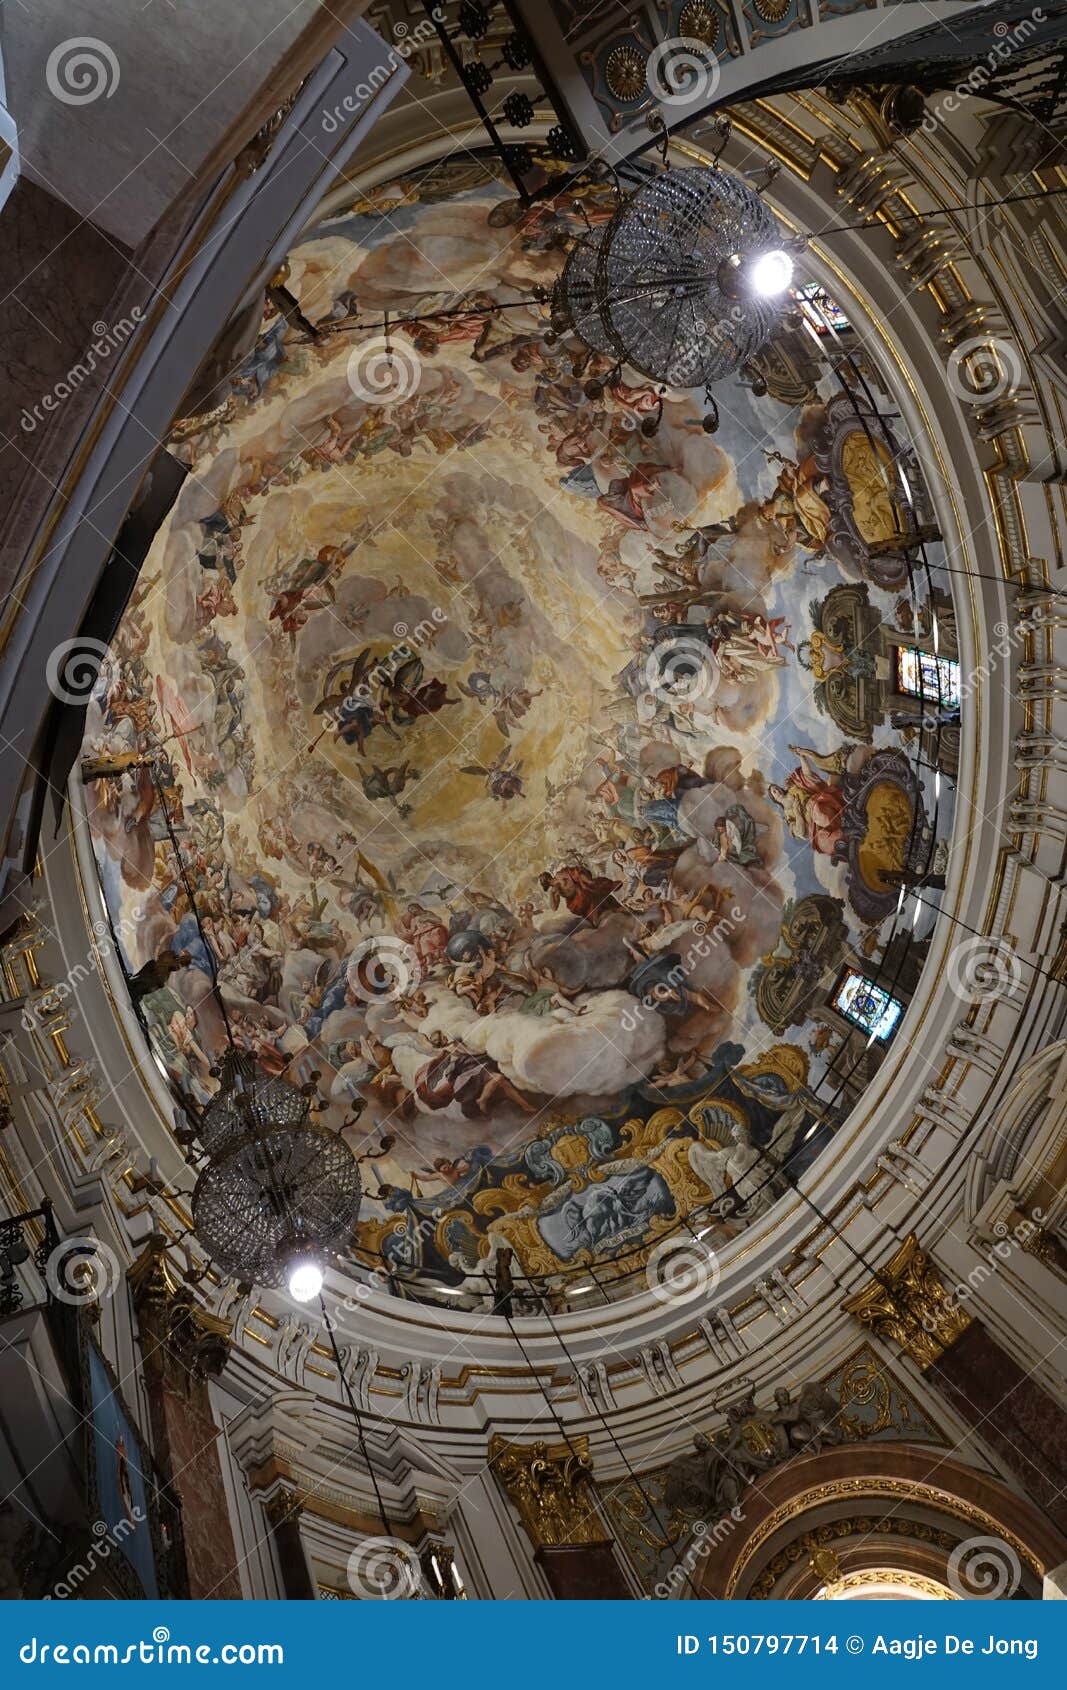 ceiling of basilica de virgin de los desamparados in valencia in spain